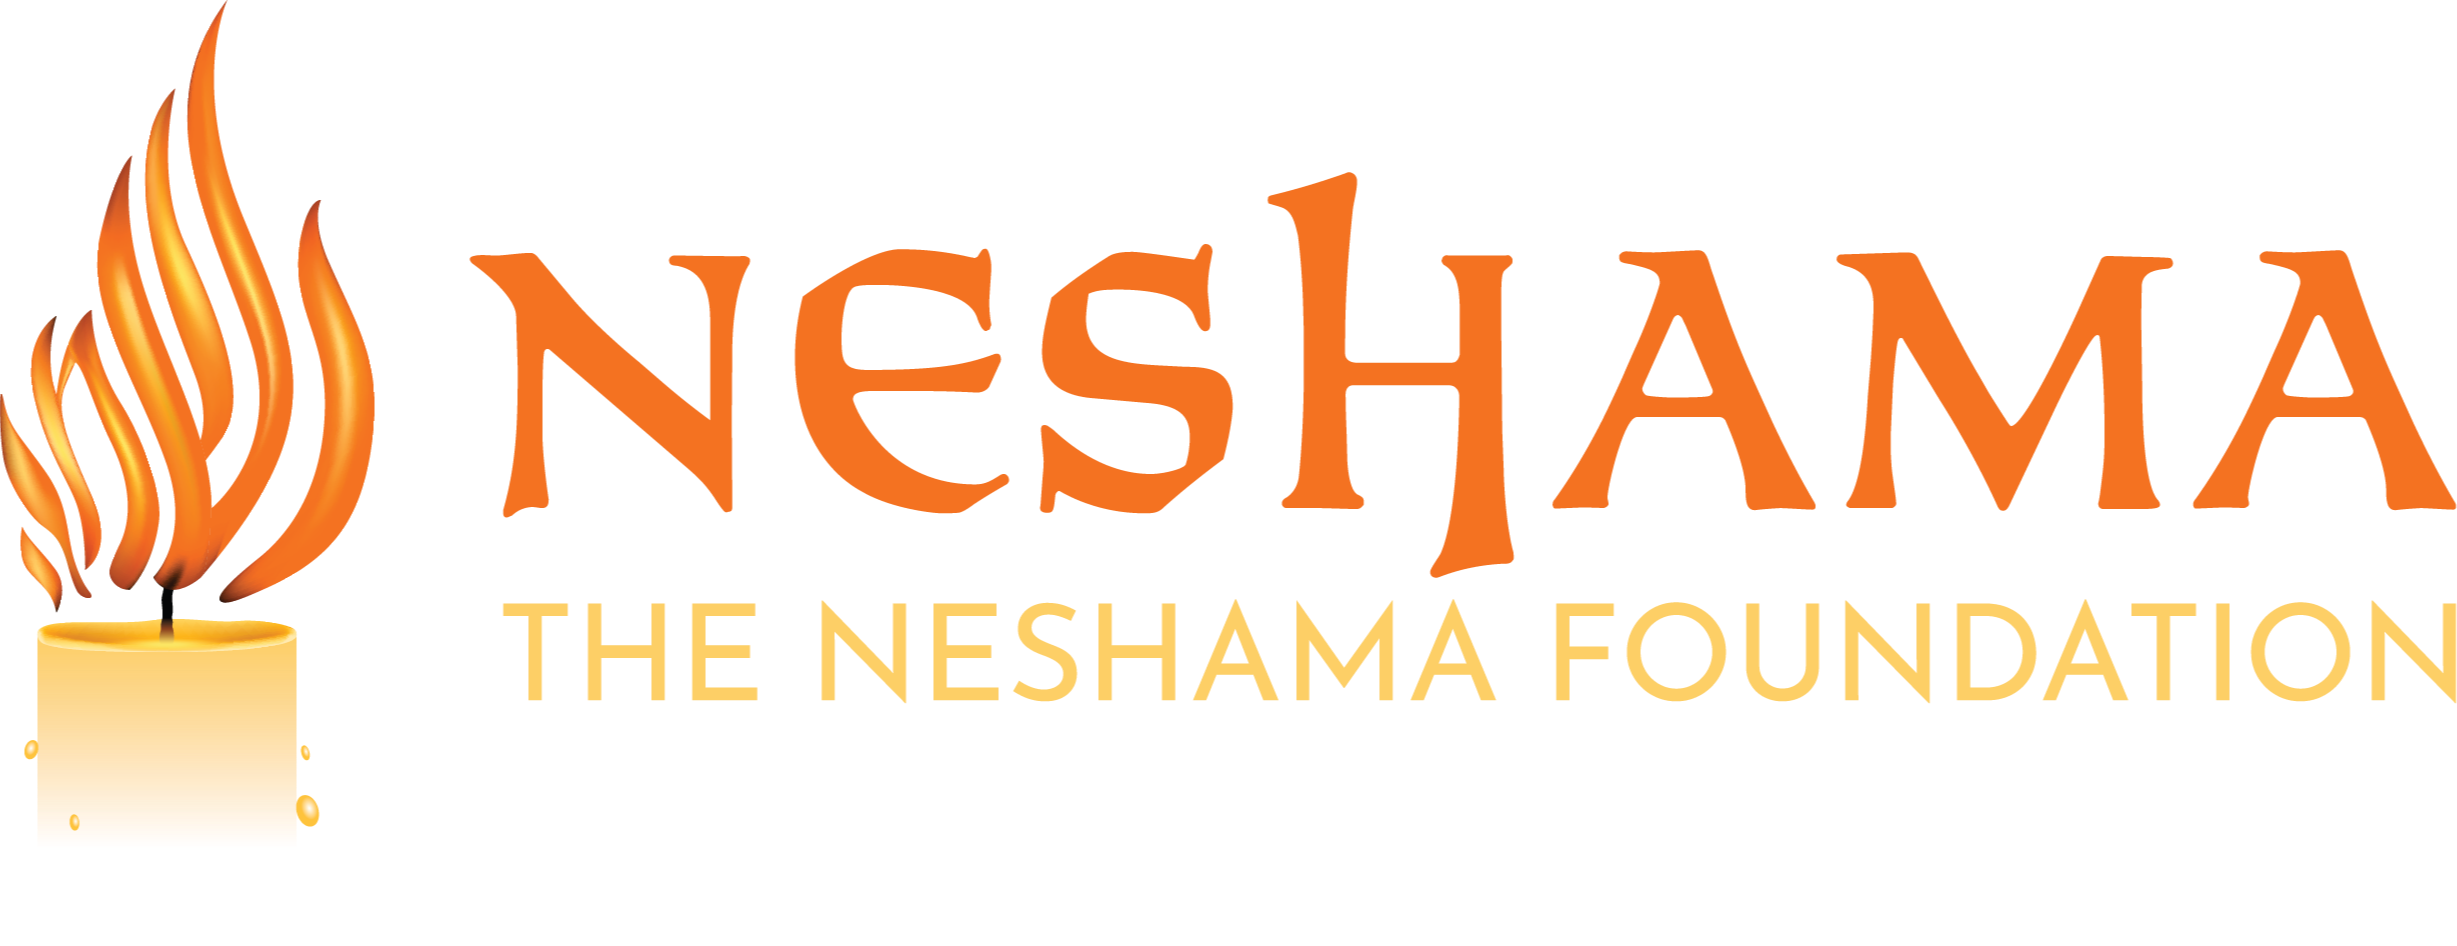 The Neshama Foundation logo